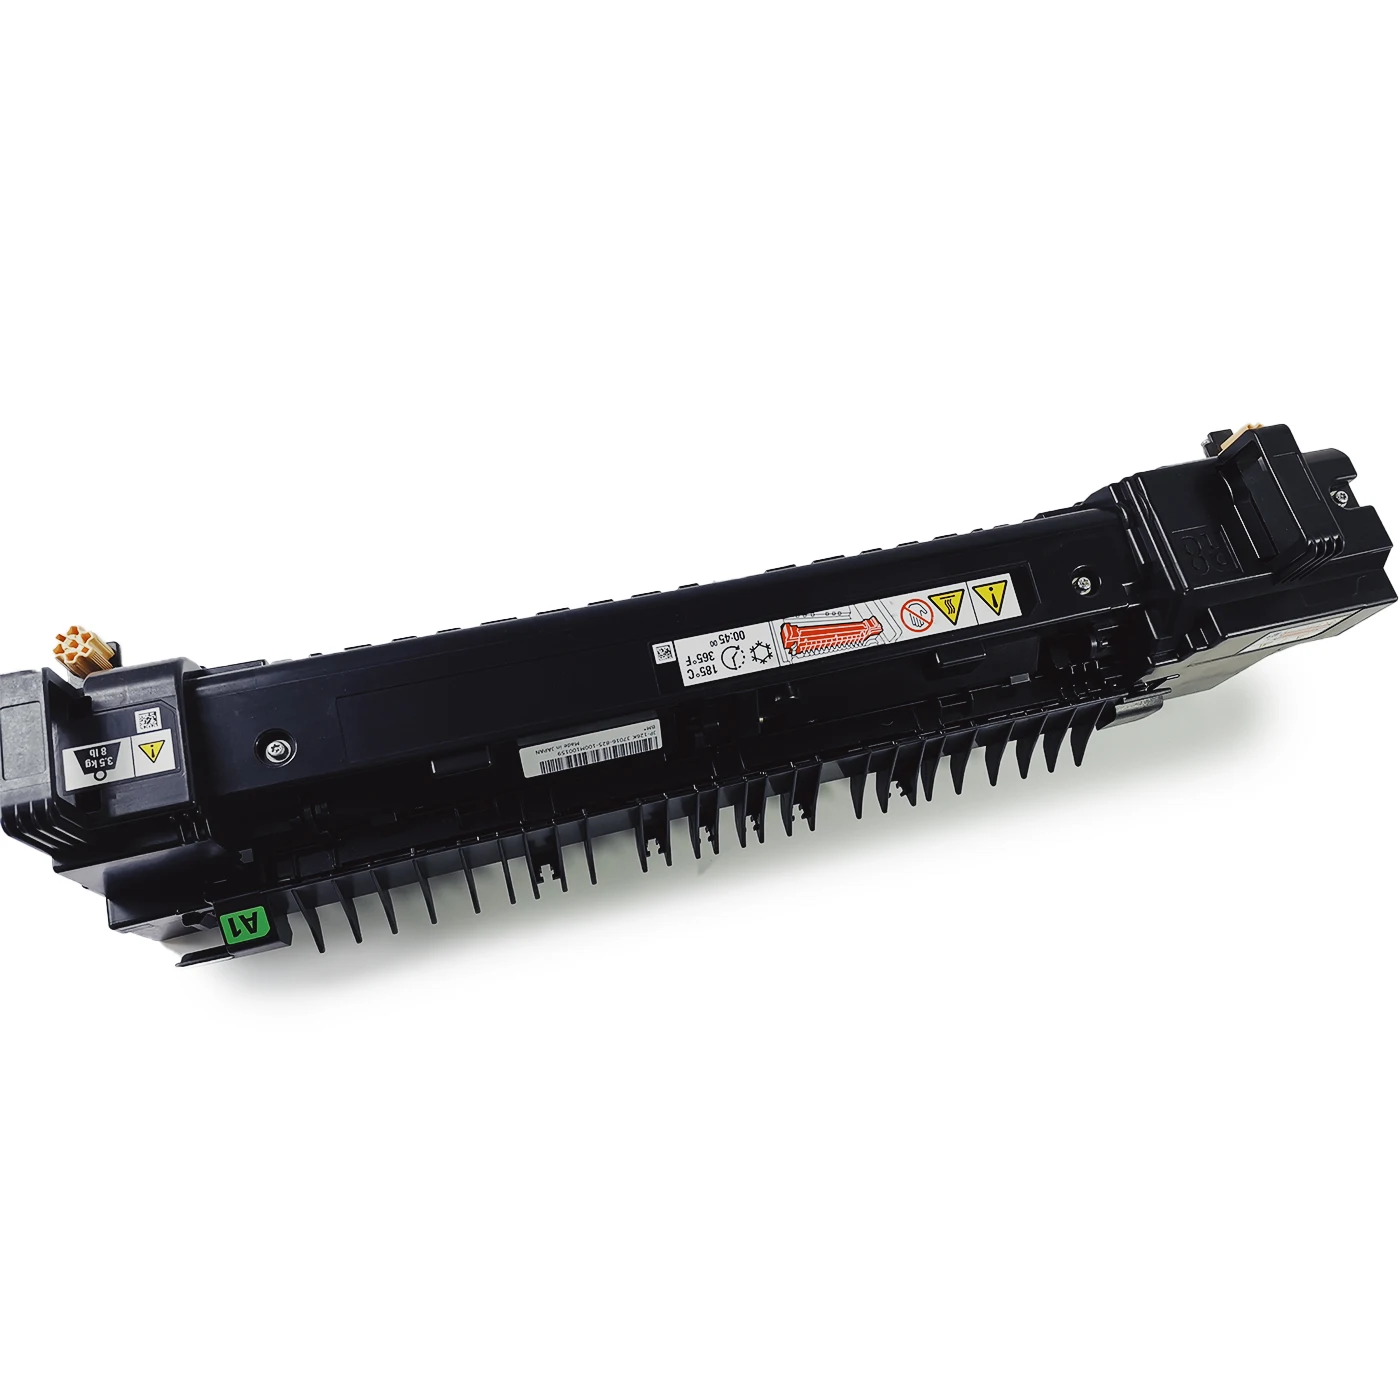 
ZHHP 110V/220V Fuser Unit For Xeroxs WorkCentre 7970 AltaLink C8070 Fuser Assembly  (60826126031)